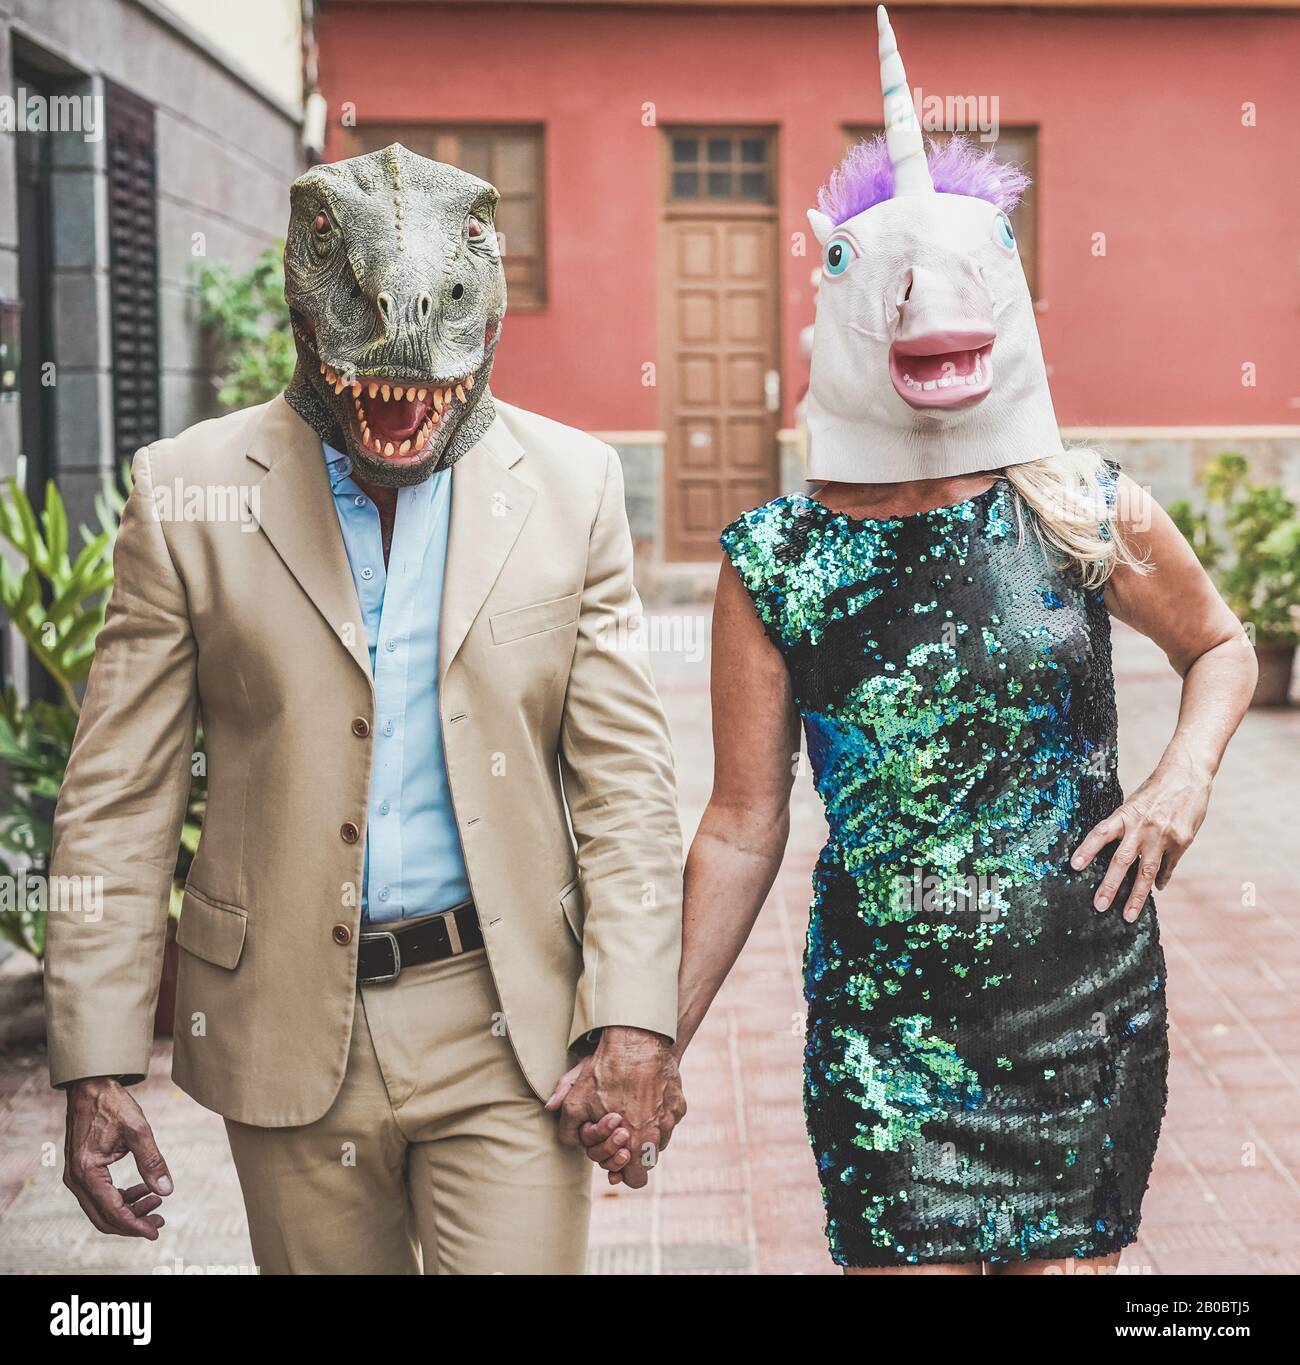 Verrücktes Senioren-Paar mit T-rex und Hähnchenmaske durch die Stadtstraße spazieren - Alte Trend-Leute, die zusammen Spaß haben - Absurdes und lustiges Trend-Konzept Stockfoto